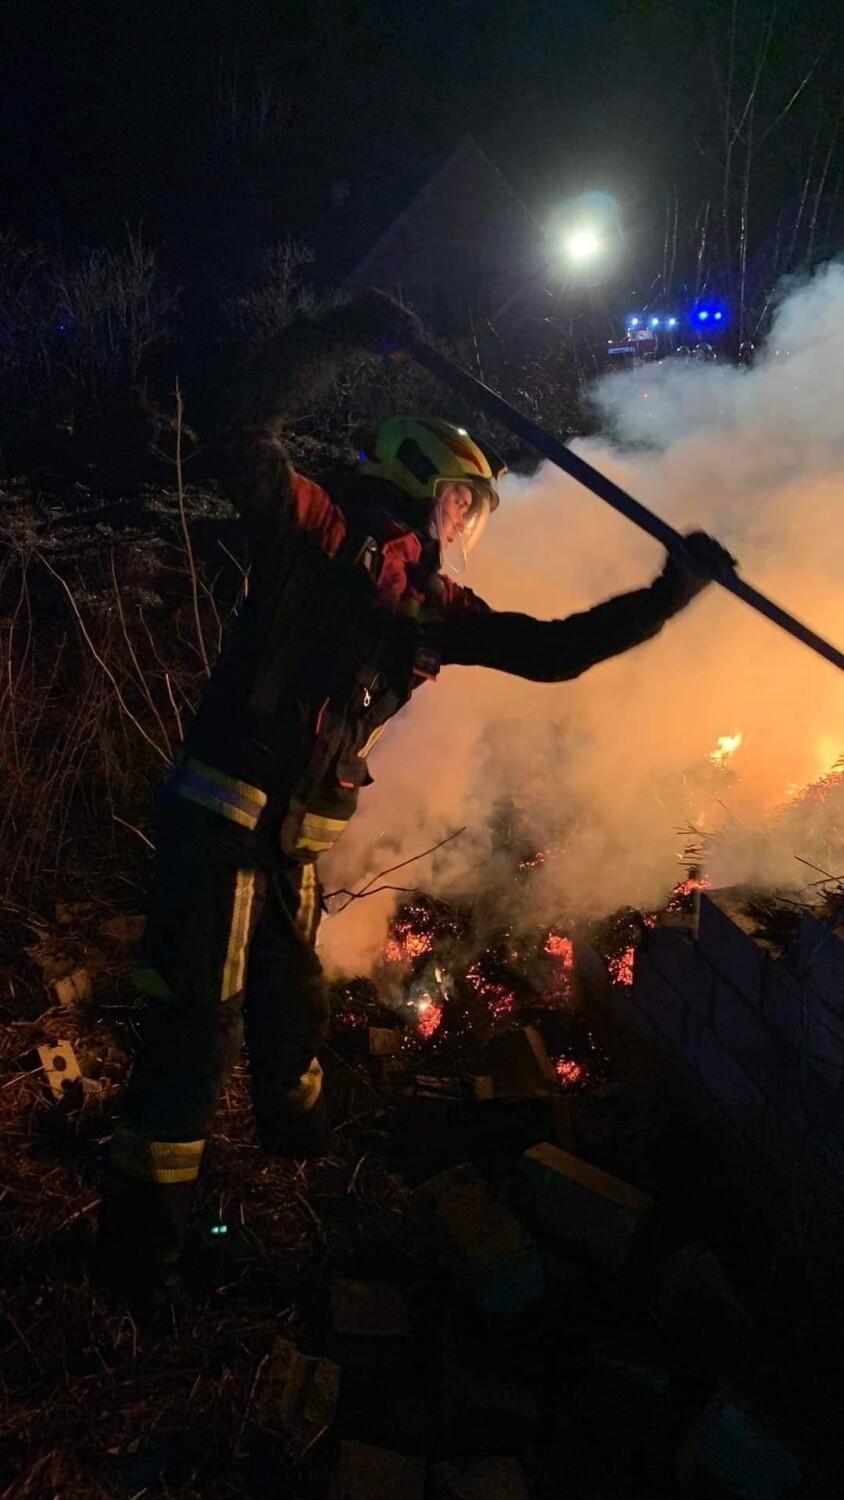 Pożar stodoły w Owieczkach. W akcji wzięło udział 14 zastępów straży pożarnej [ZDJĘCIA]